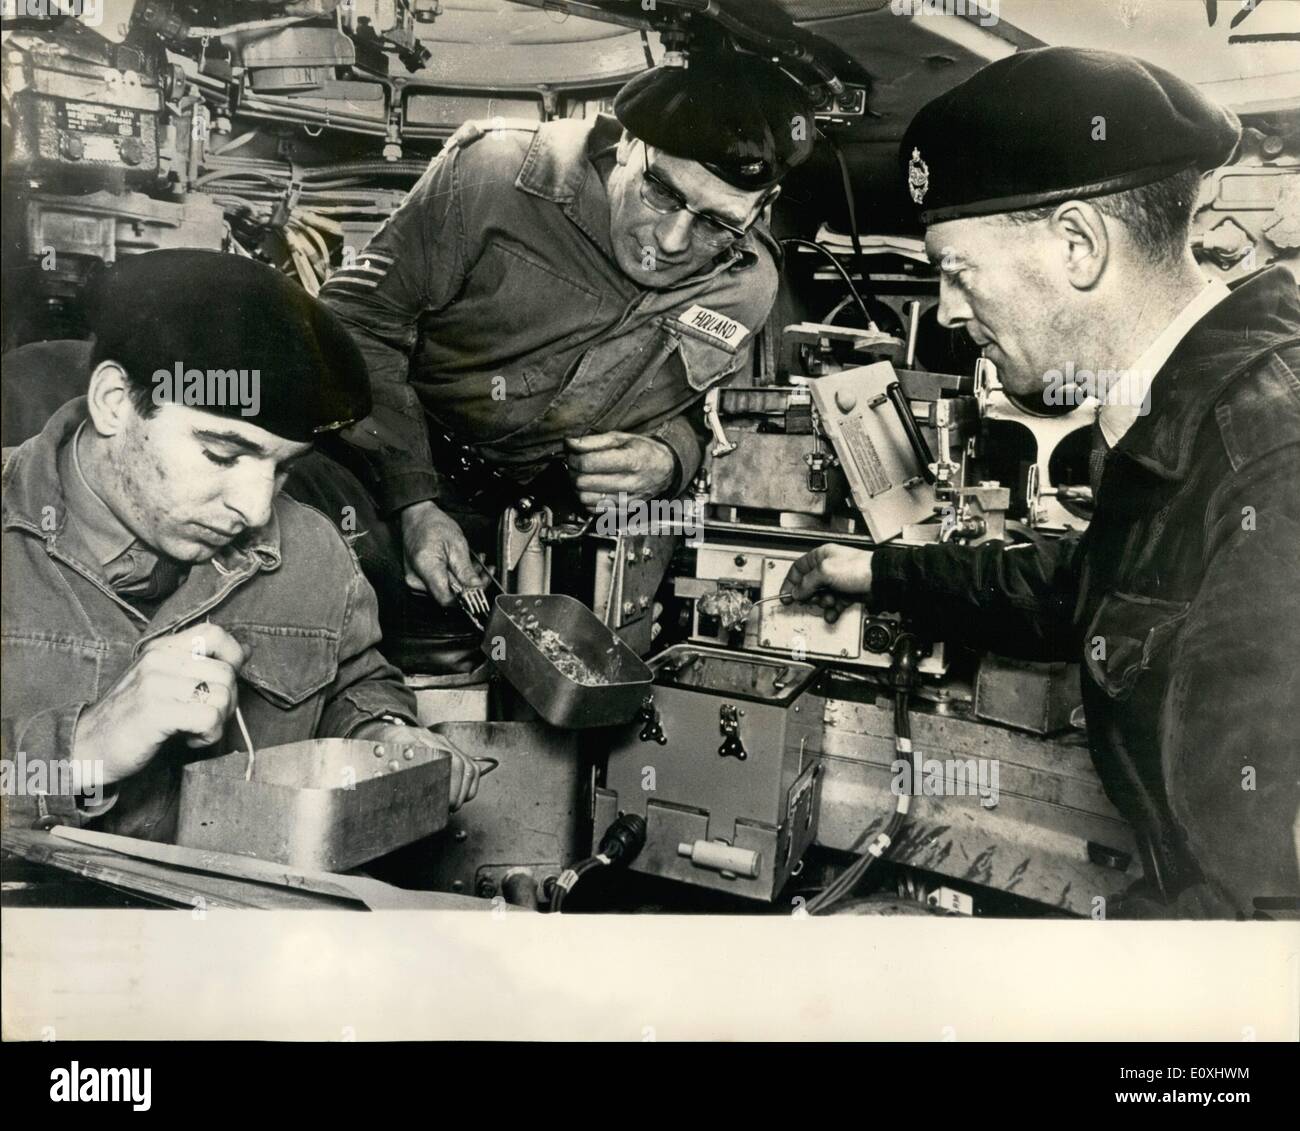 01 gennaio 1967 - Luncheon - a bordo DI UN carro armato; l'esercito è deliziato con il loro ultimo carro armato - il Chieftain. Pesa 50 tonnellate, porta una pistola da 120 mm, è dotata di un meccanismo stabilizzatore e ha la sua capacità di sfogare contemporaneamente la morte e la distruzione dei suoi nemici, uova e fagioli cotti al suo equipaggio, ieri, Il corpo blindato reale accettò di porre la dimostrazione ta della prodezza della Chieftain a Lutwerth, Dorset Foto Stock